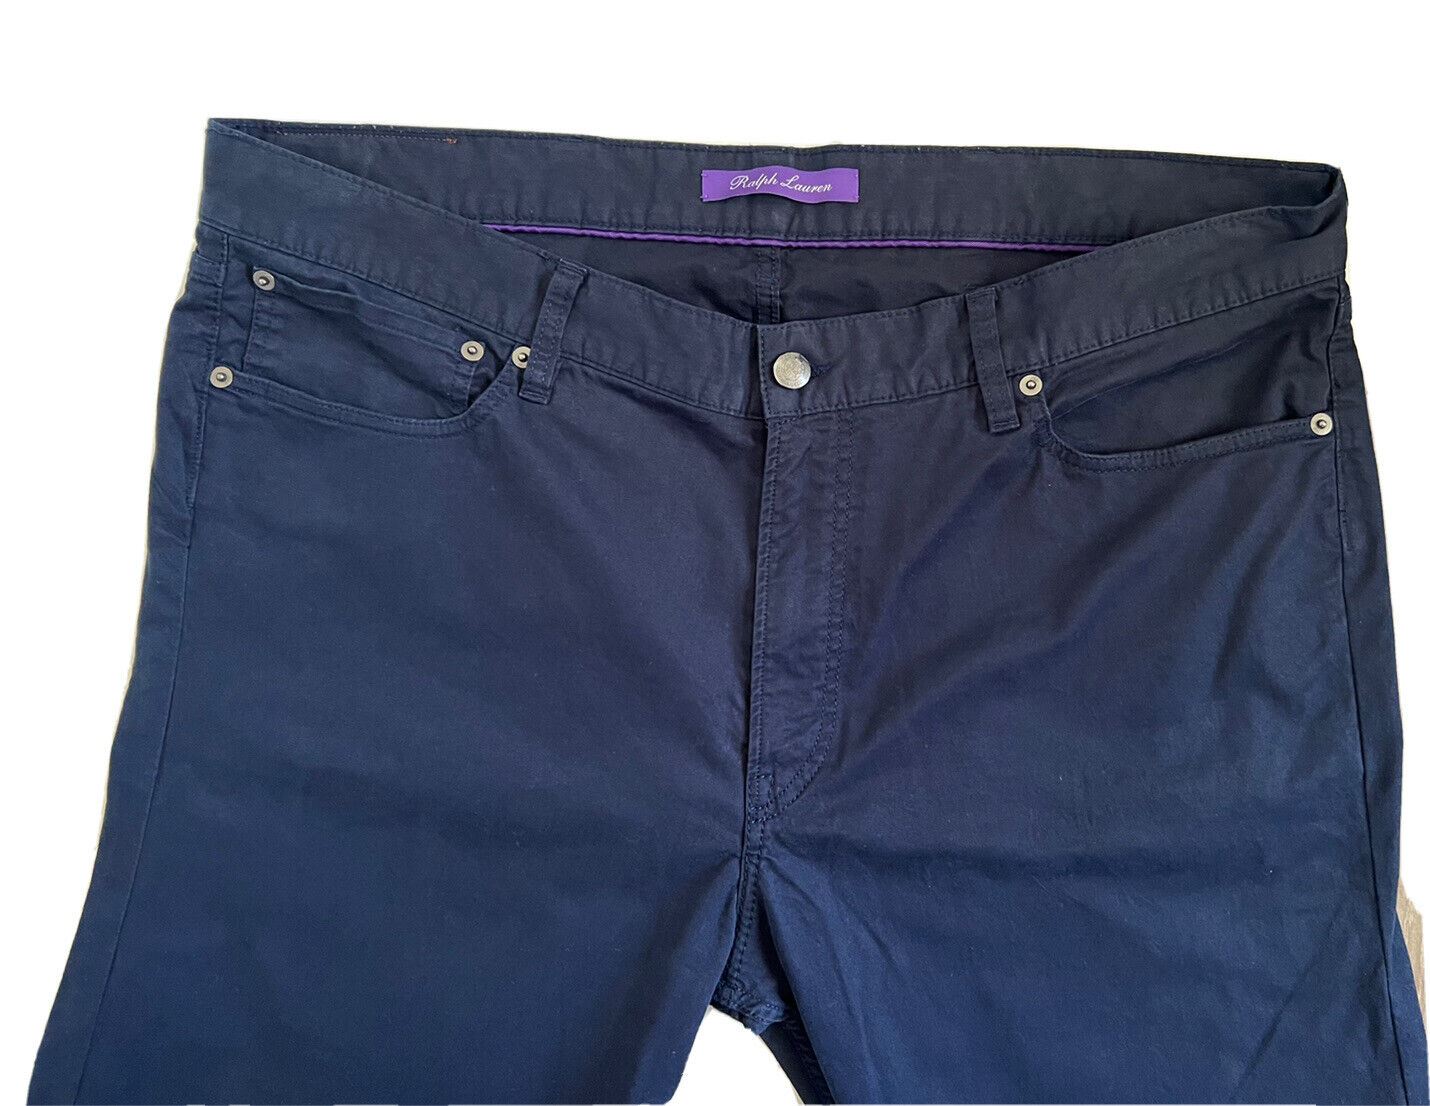 Neu mit Etikett: 495 $ Ralph Lauren Purple Label Slim Fit Freizeithose 38 US Hergestellt in Portugal 